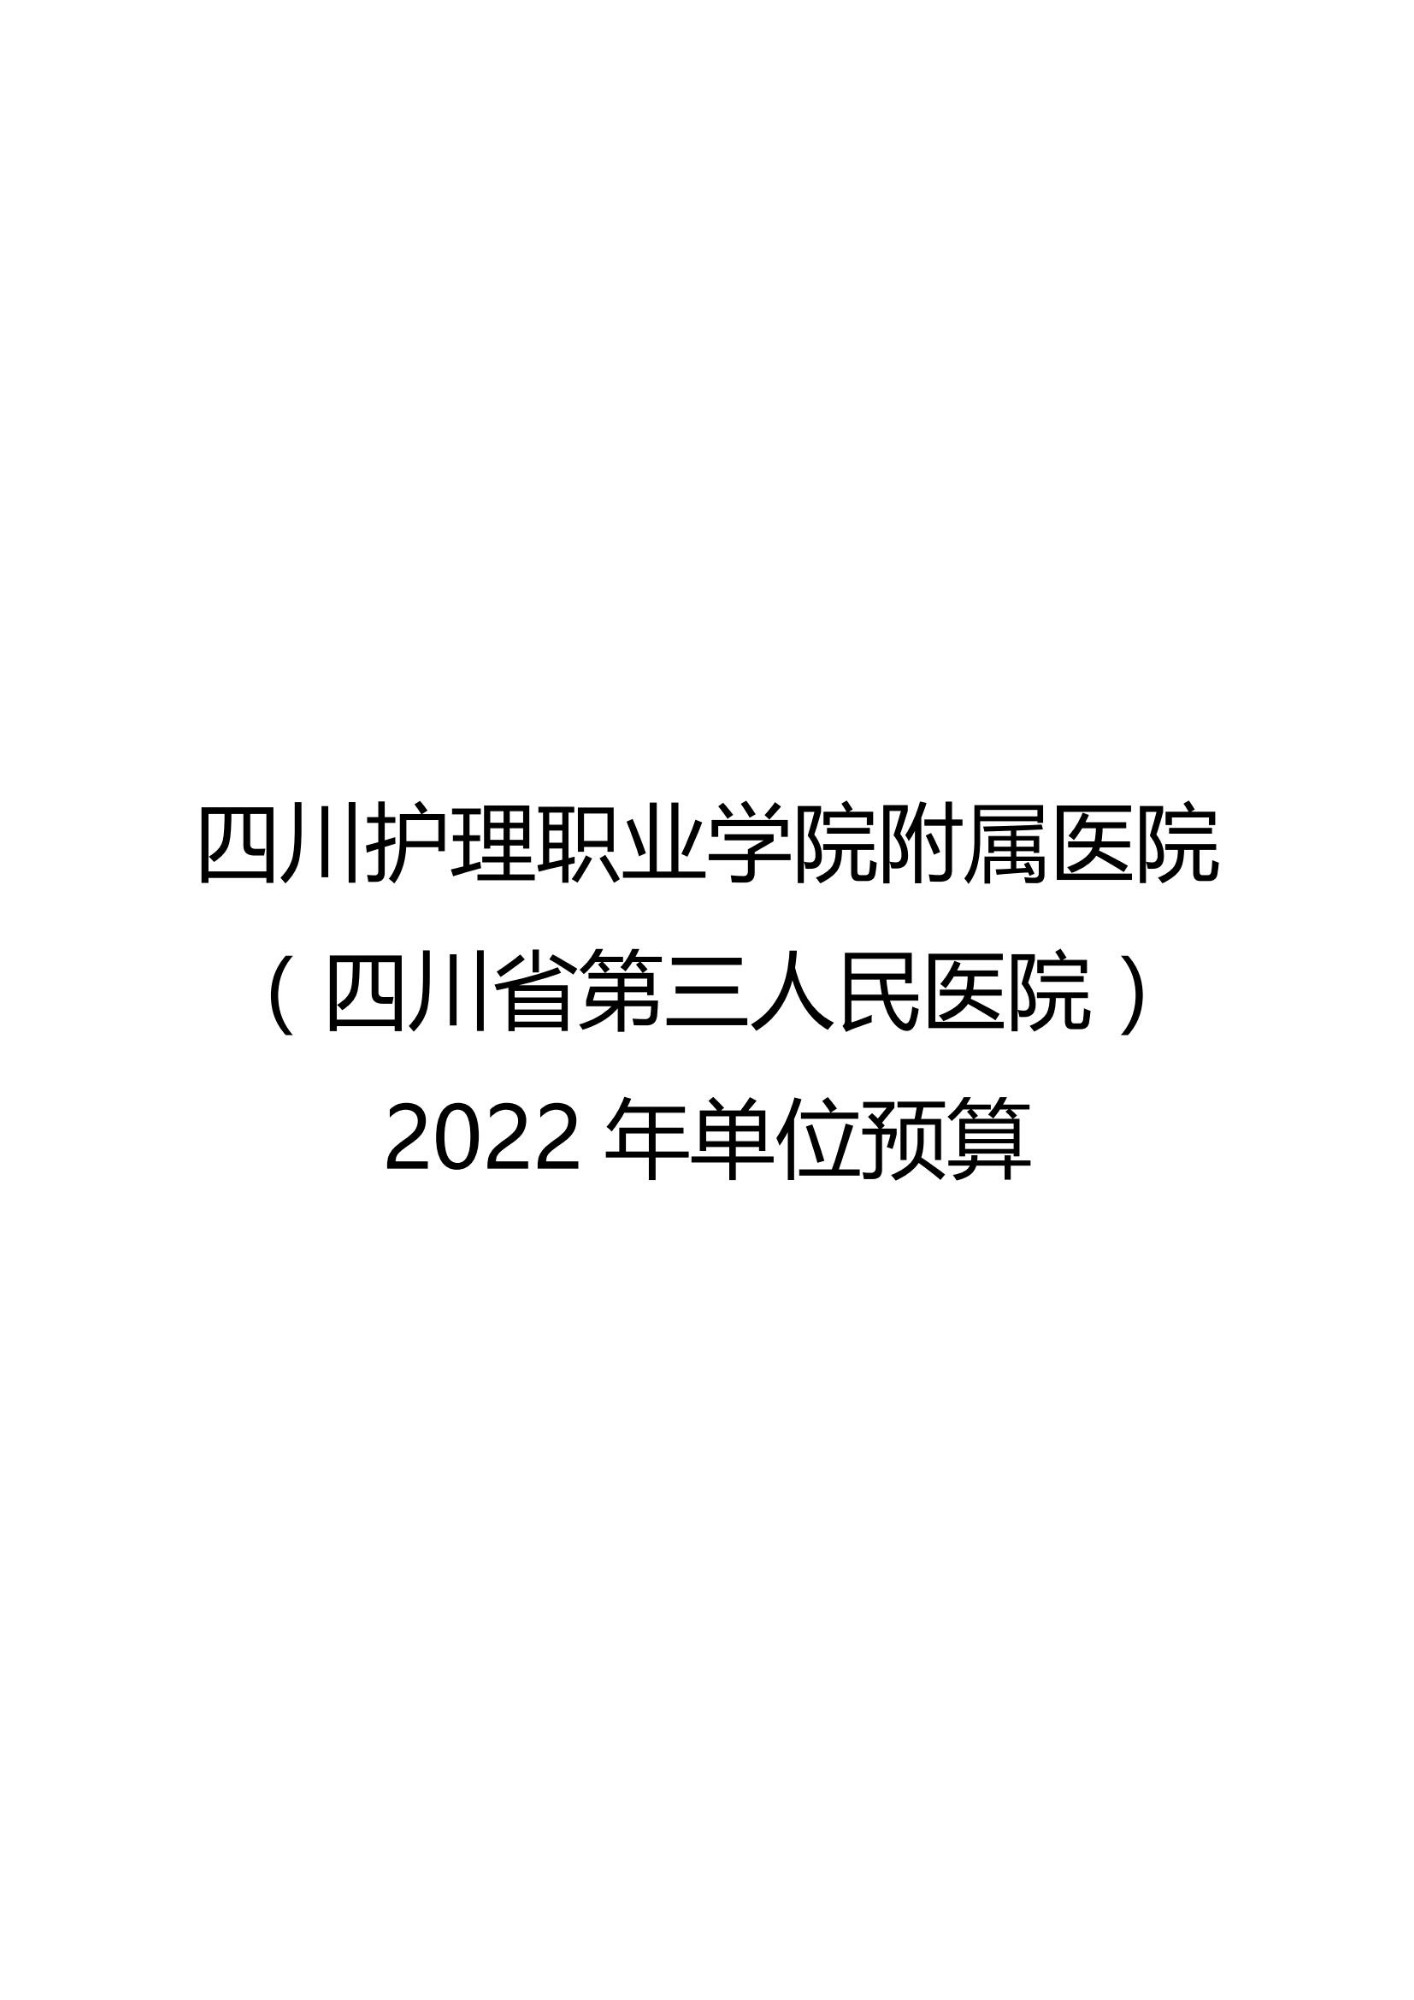 四川护理职业学院附属医院（四川省第三人民医院）《关于2022年单位预算编制说明》的公示